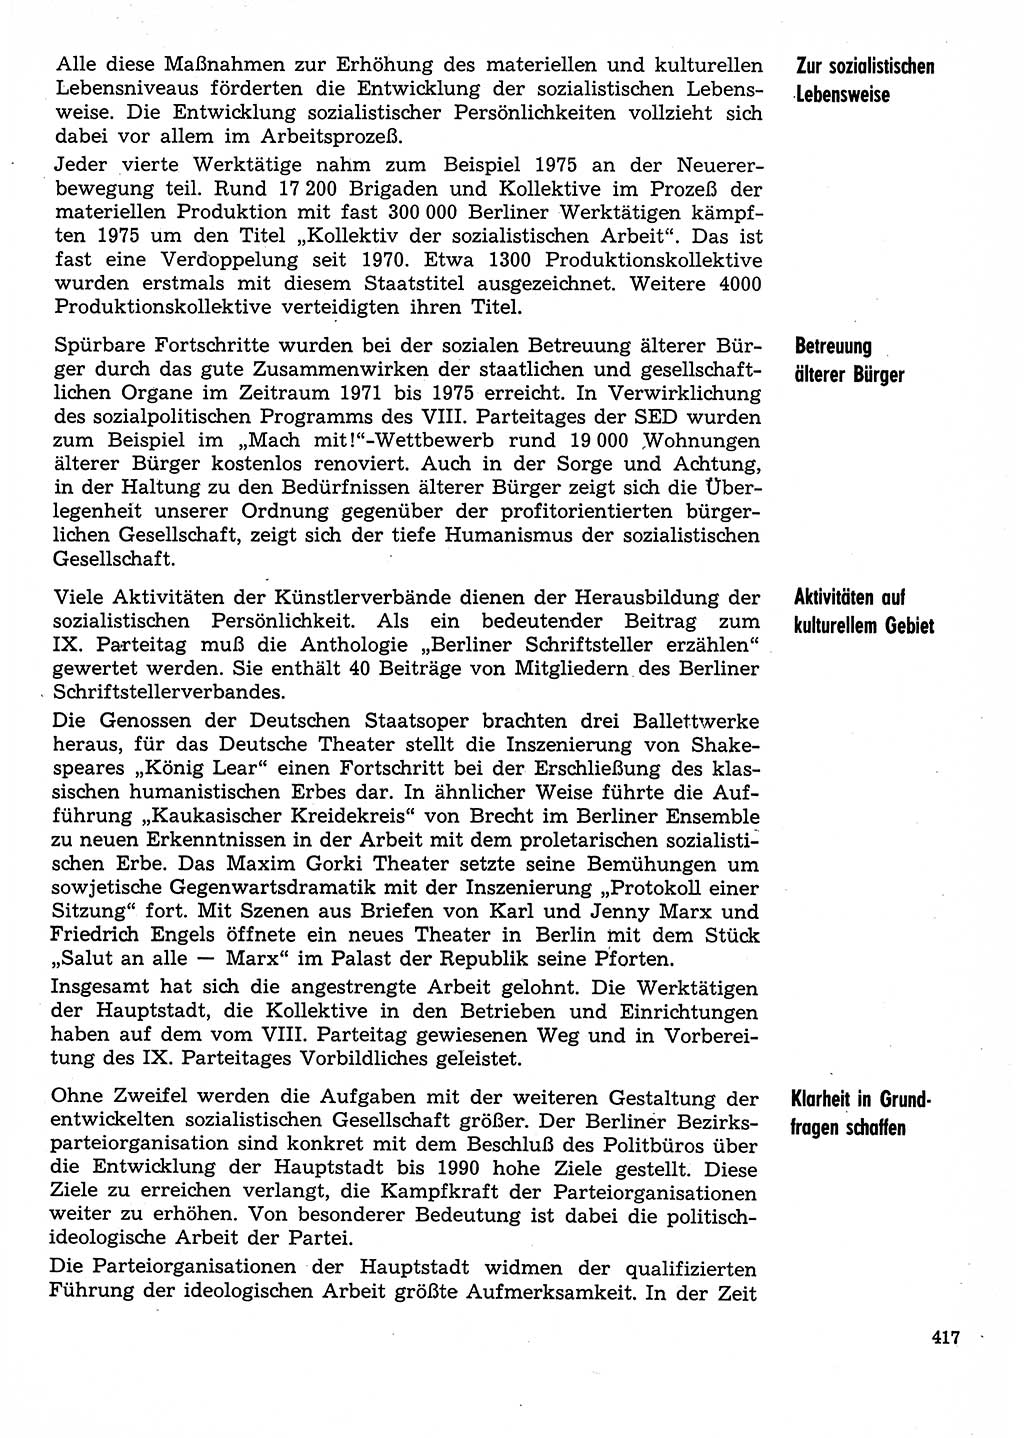 Neuer Weg (NW), Organ des Zentralkomitees (ZK) der SED (Sozialistische Einheitspartei Deutschlands) für Fragen des Parteilebens, 31. Jahrgang [Deutsche Demokratische Republik (DDR)] 1976, Seite 417 (NW ZK SED DDR 1976, S. 417)